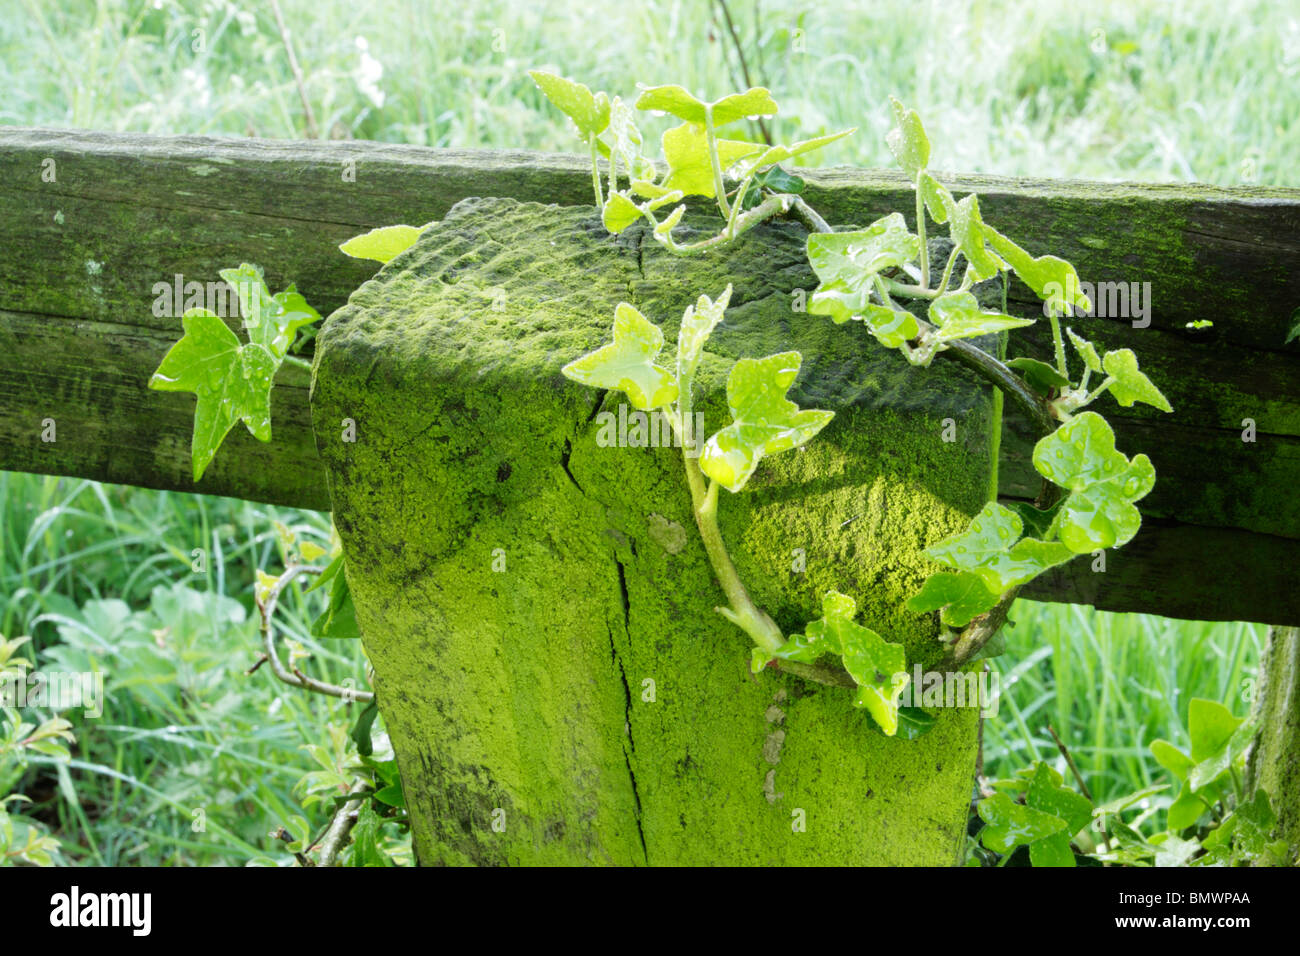 Regentropfen auf grünen grünes Wachstum von Efeu und Moos auf hölzernen Zaun-Pfosten-Riegel Stockfoto